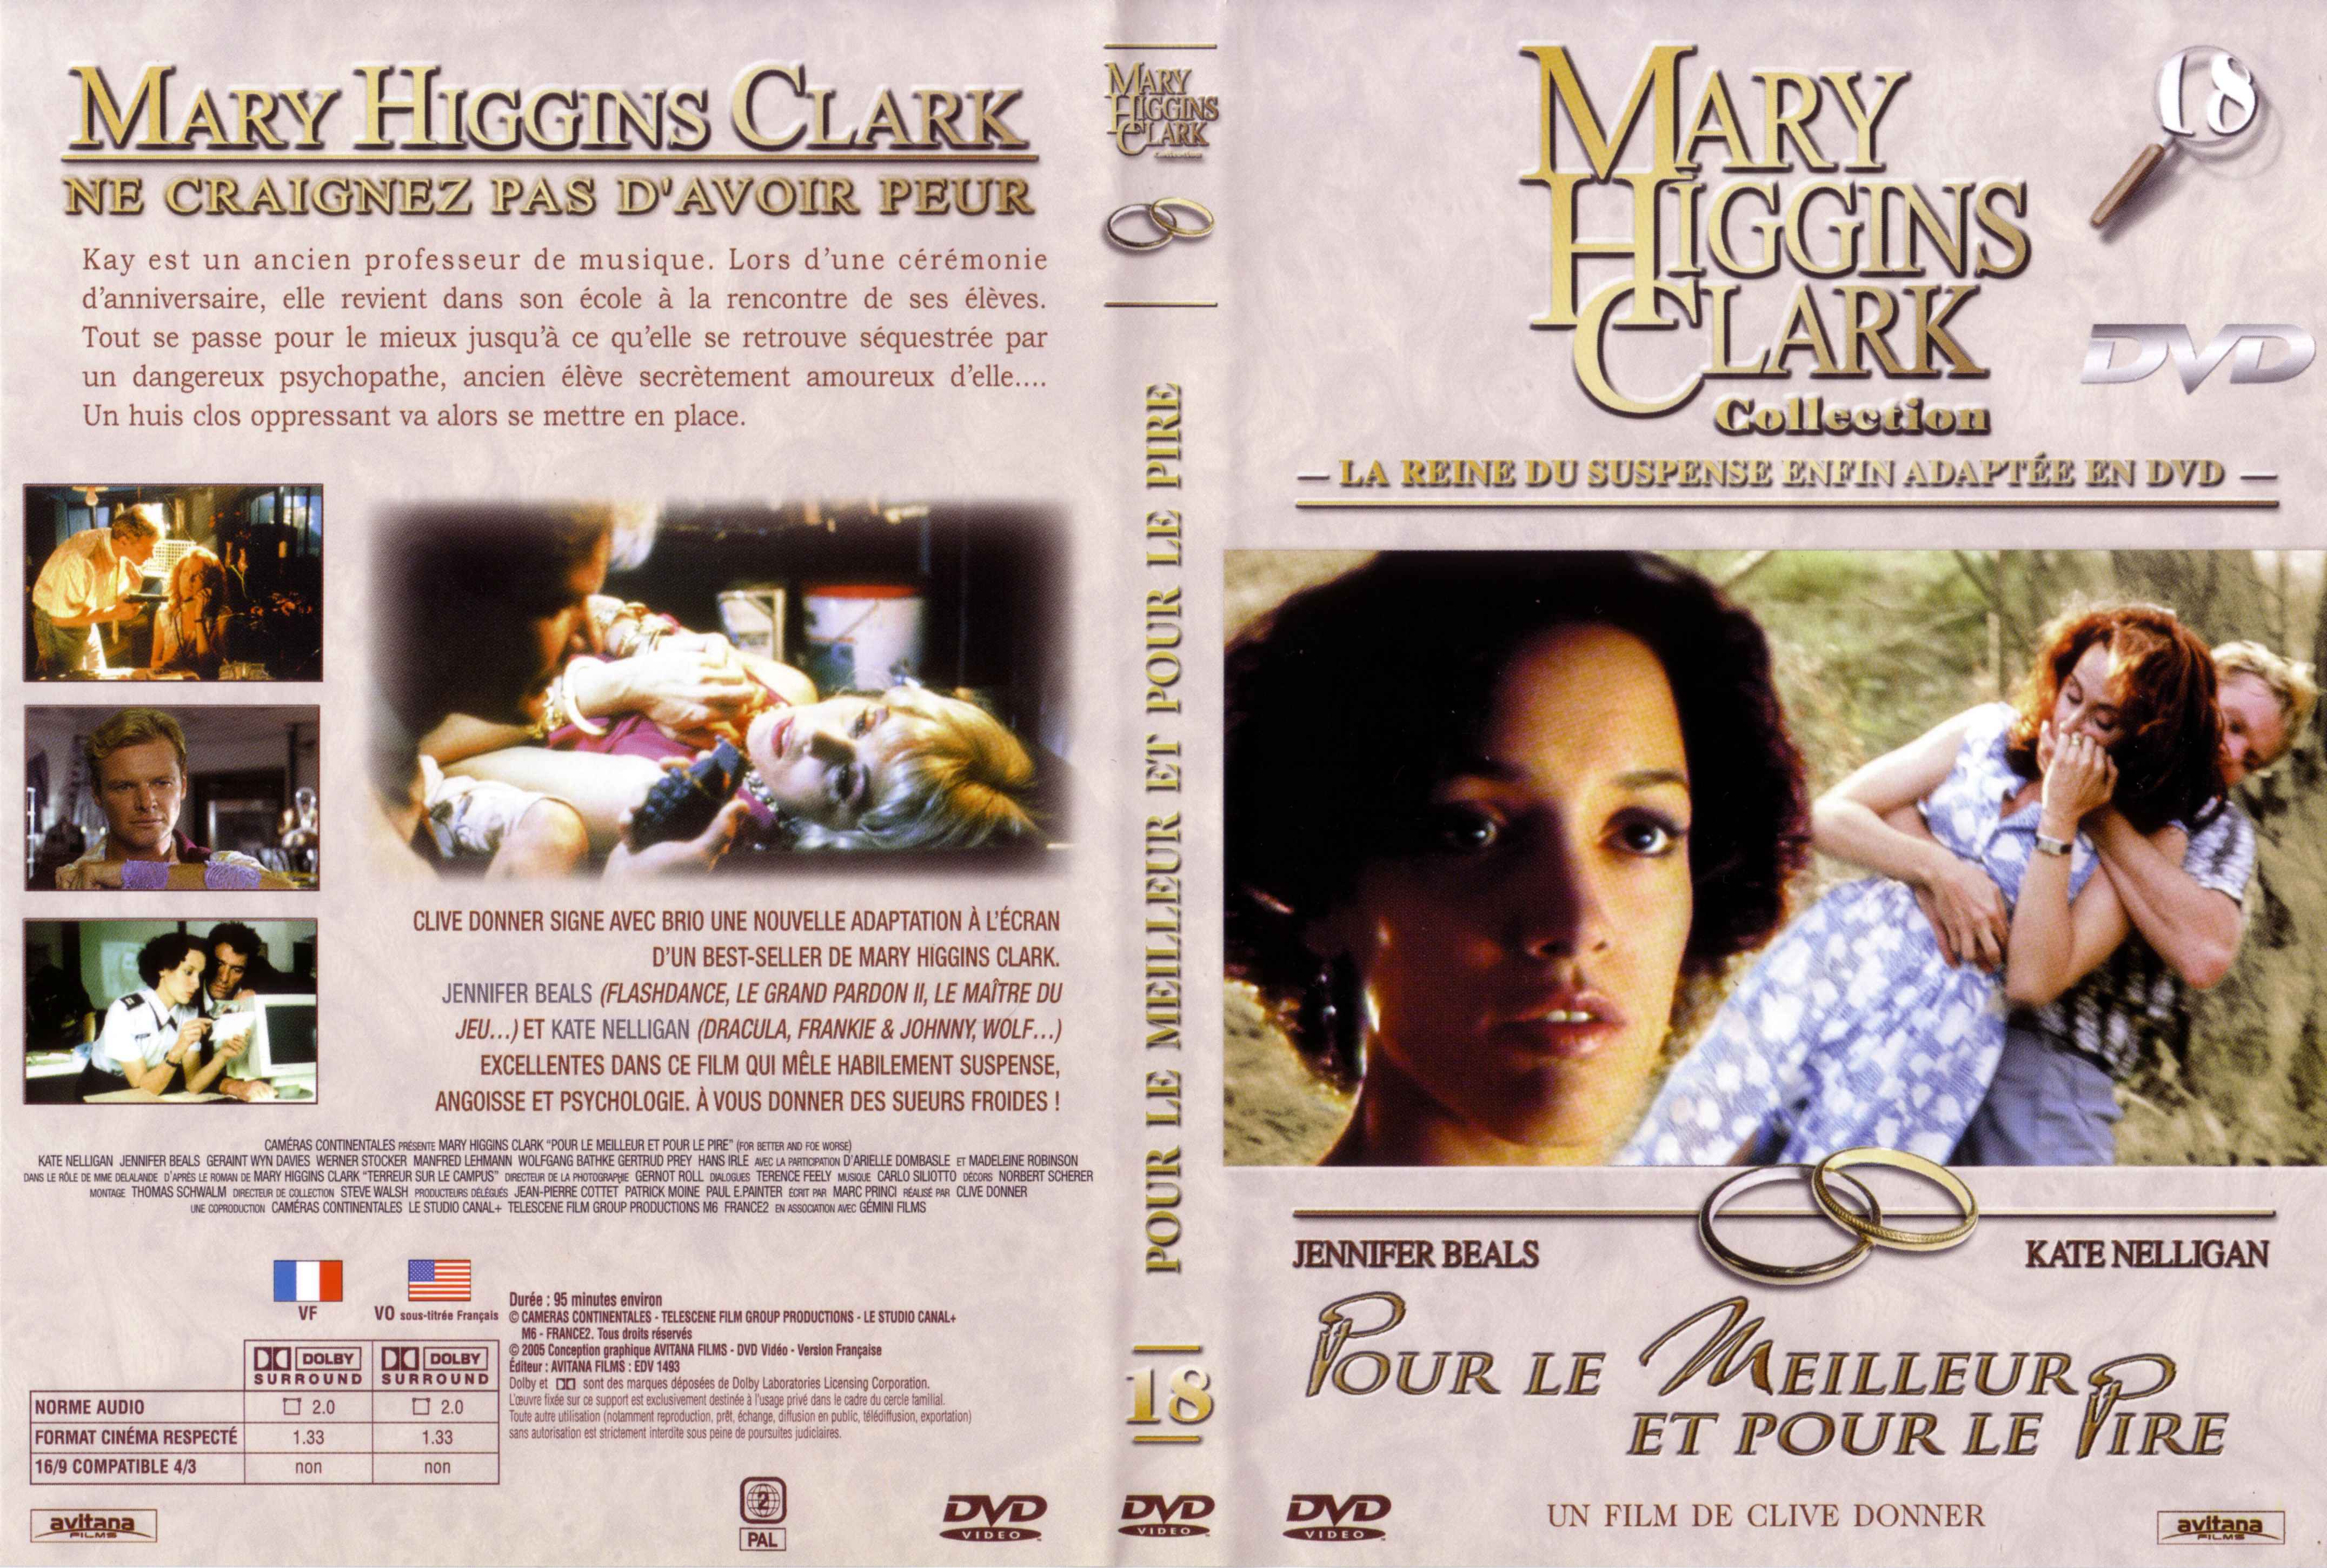 Jaquette DVD de Mary Higgins Clark vol 18 - Pour le meilleur et pour le pire - Cinéma ...4304 x 2901